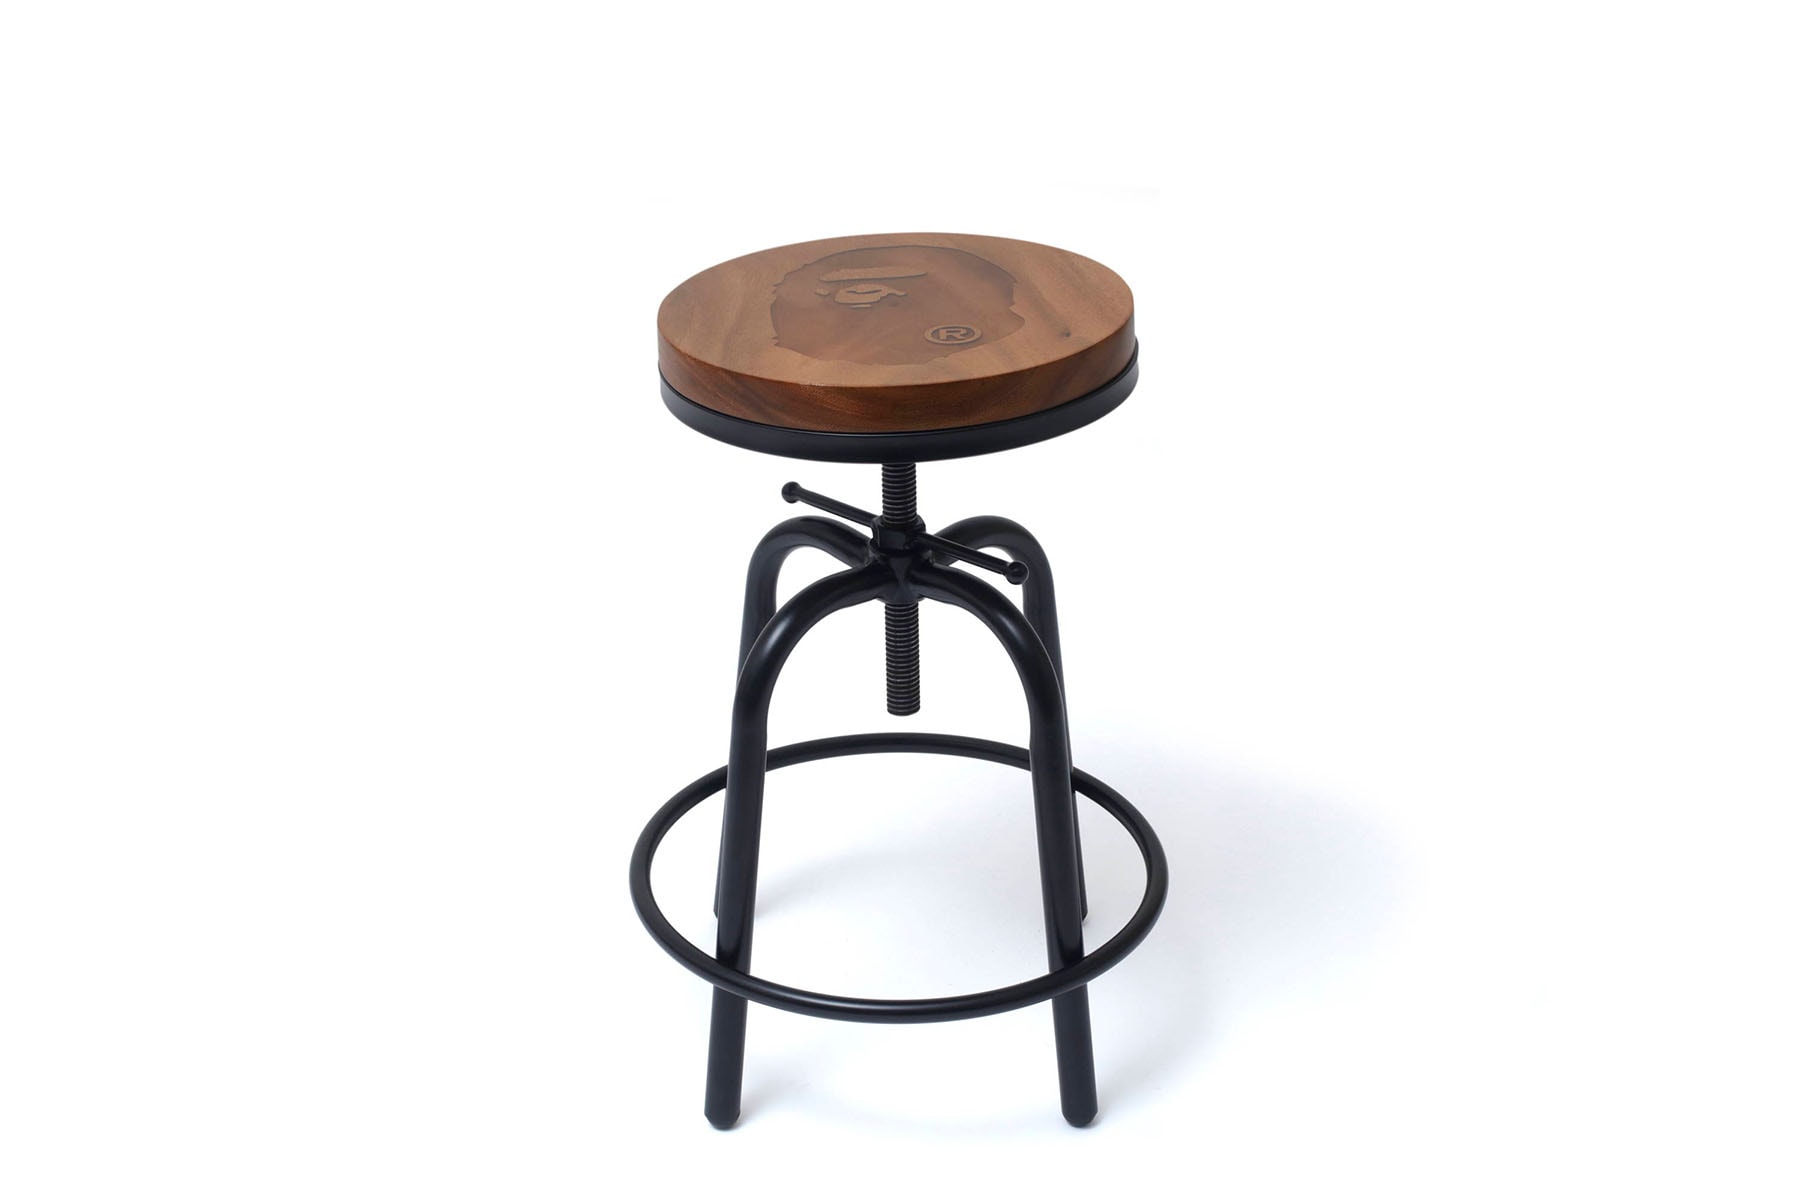 베이프의 가구 라인 '베이프 홈' 신제품 출시, 커피 테이블, 스툴, 의자, 원목, BAPE HOME